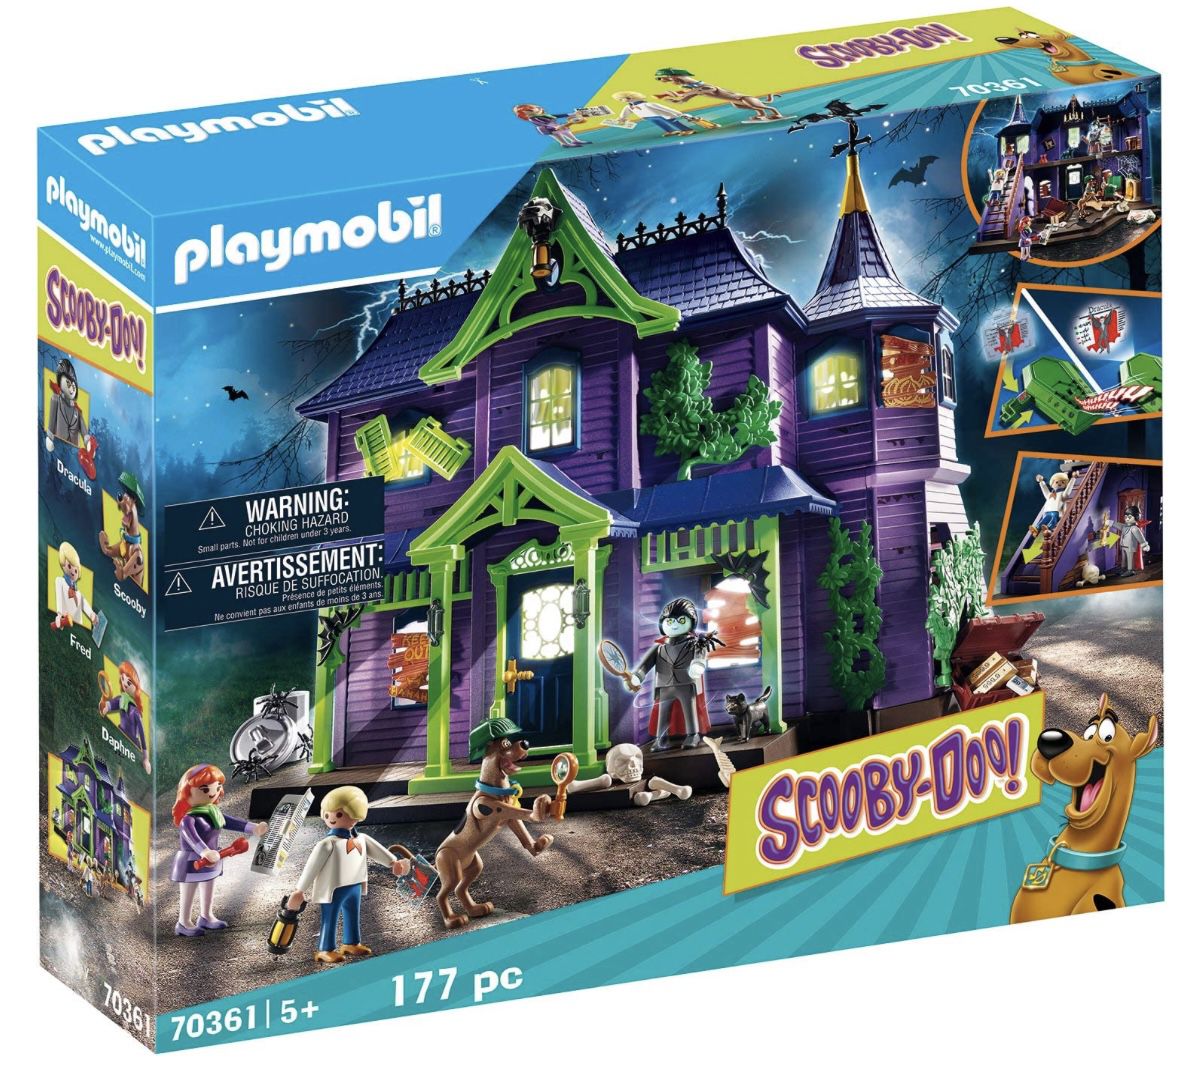 Playmobil Scooby Doo!   Abenteuer im Geisterhaus (70361) für 50,94€ (statt 70€)